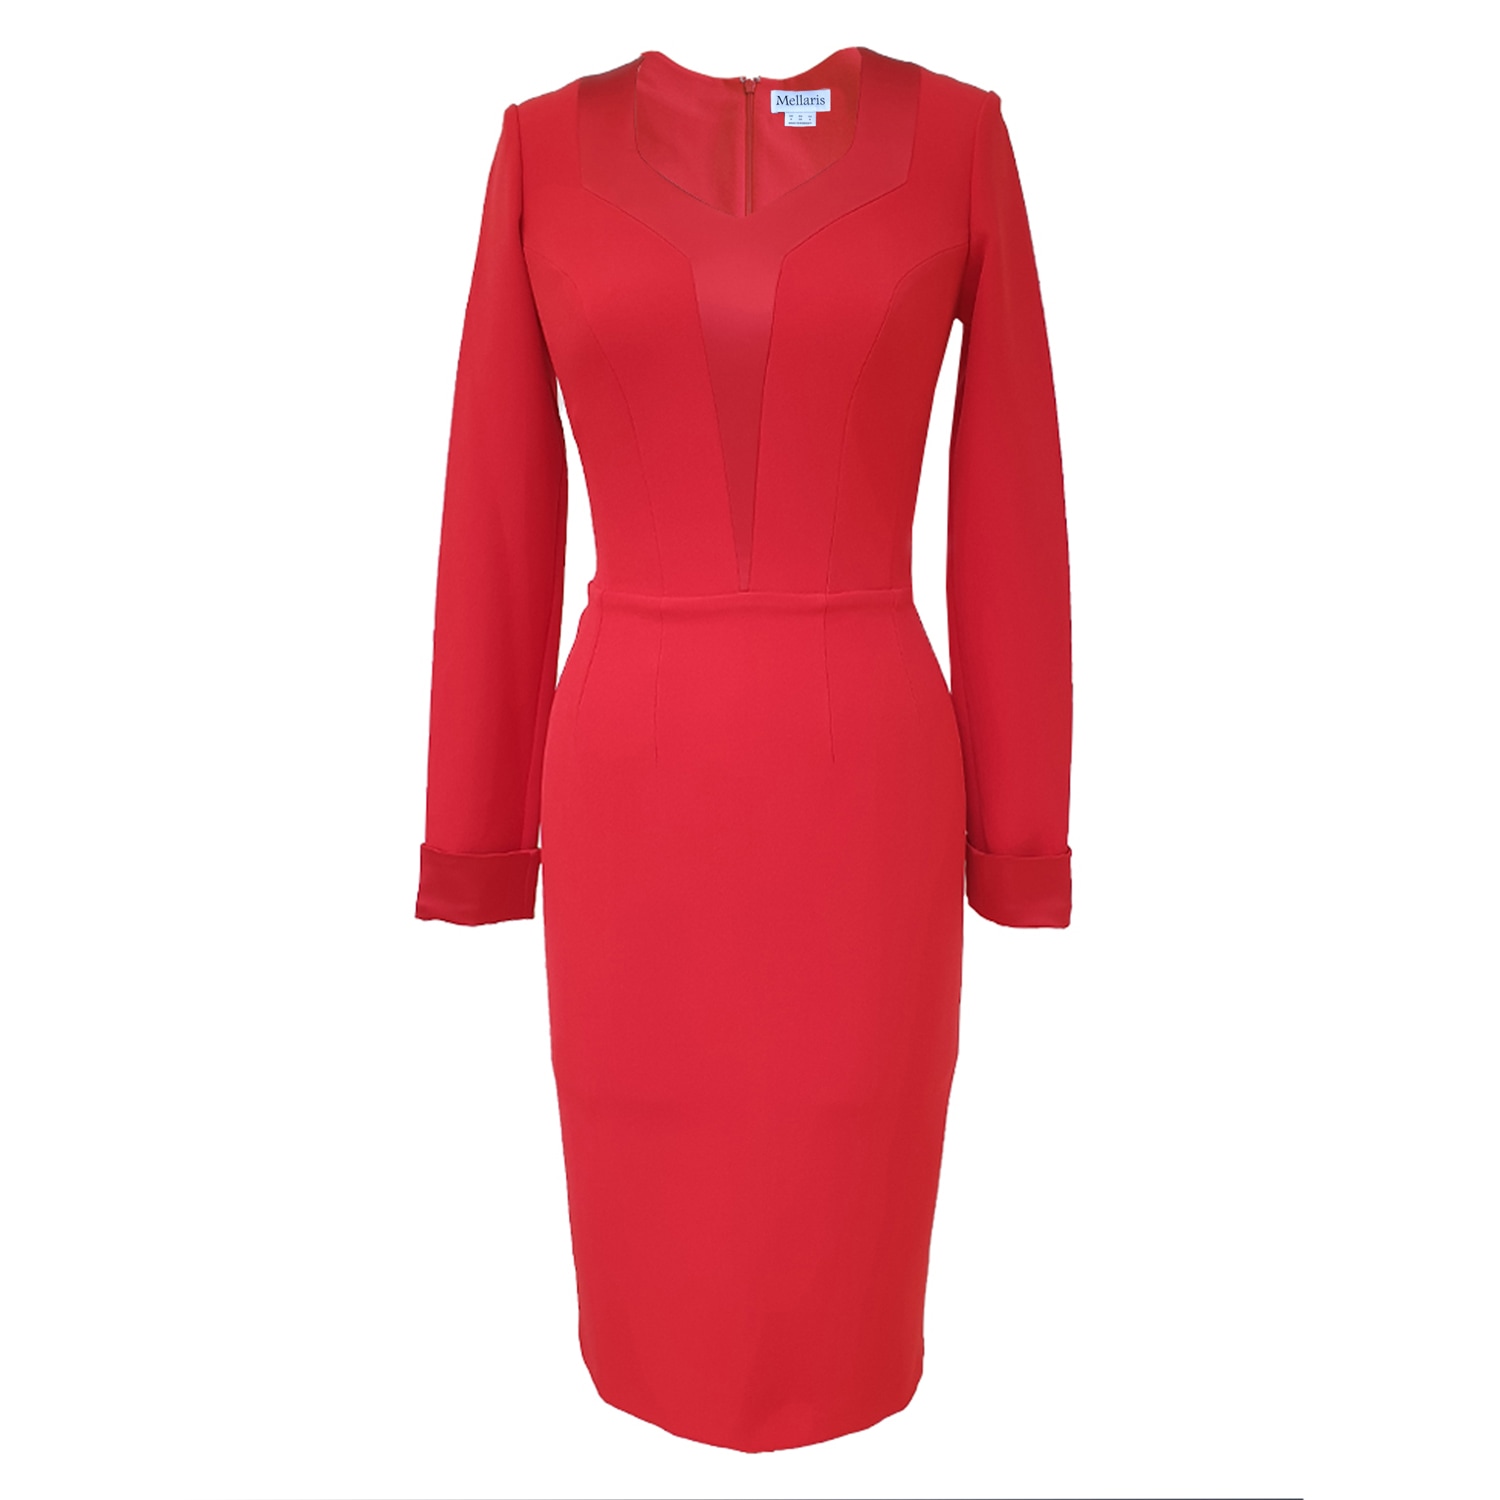 Mellaris Women's Kate Red Dress